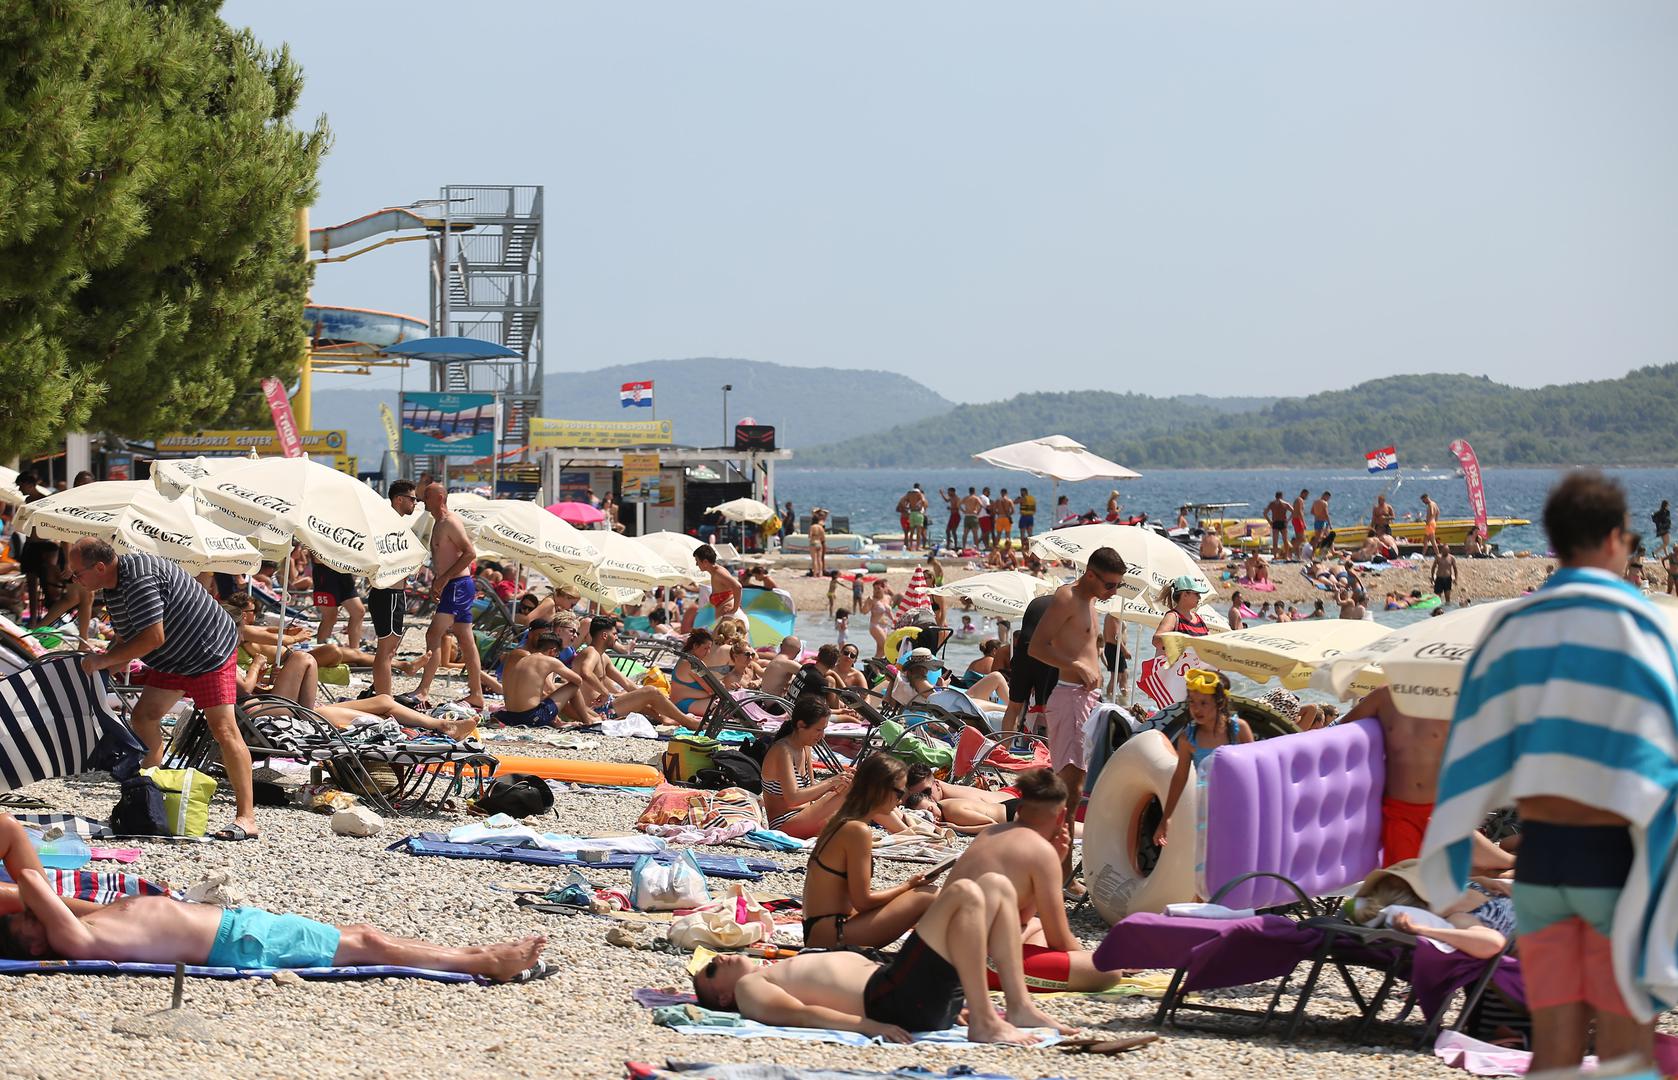 Svakoga dana sve je više turista na našoj obali, a da turistička sezona ipak nije toliko podbacila, pokazuju plaže diljem Hrvatske.